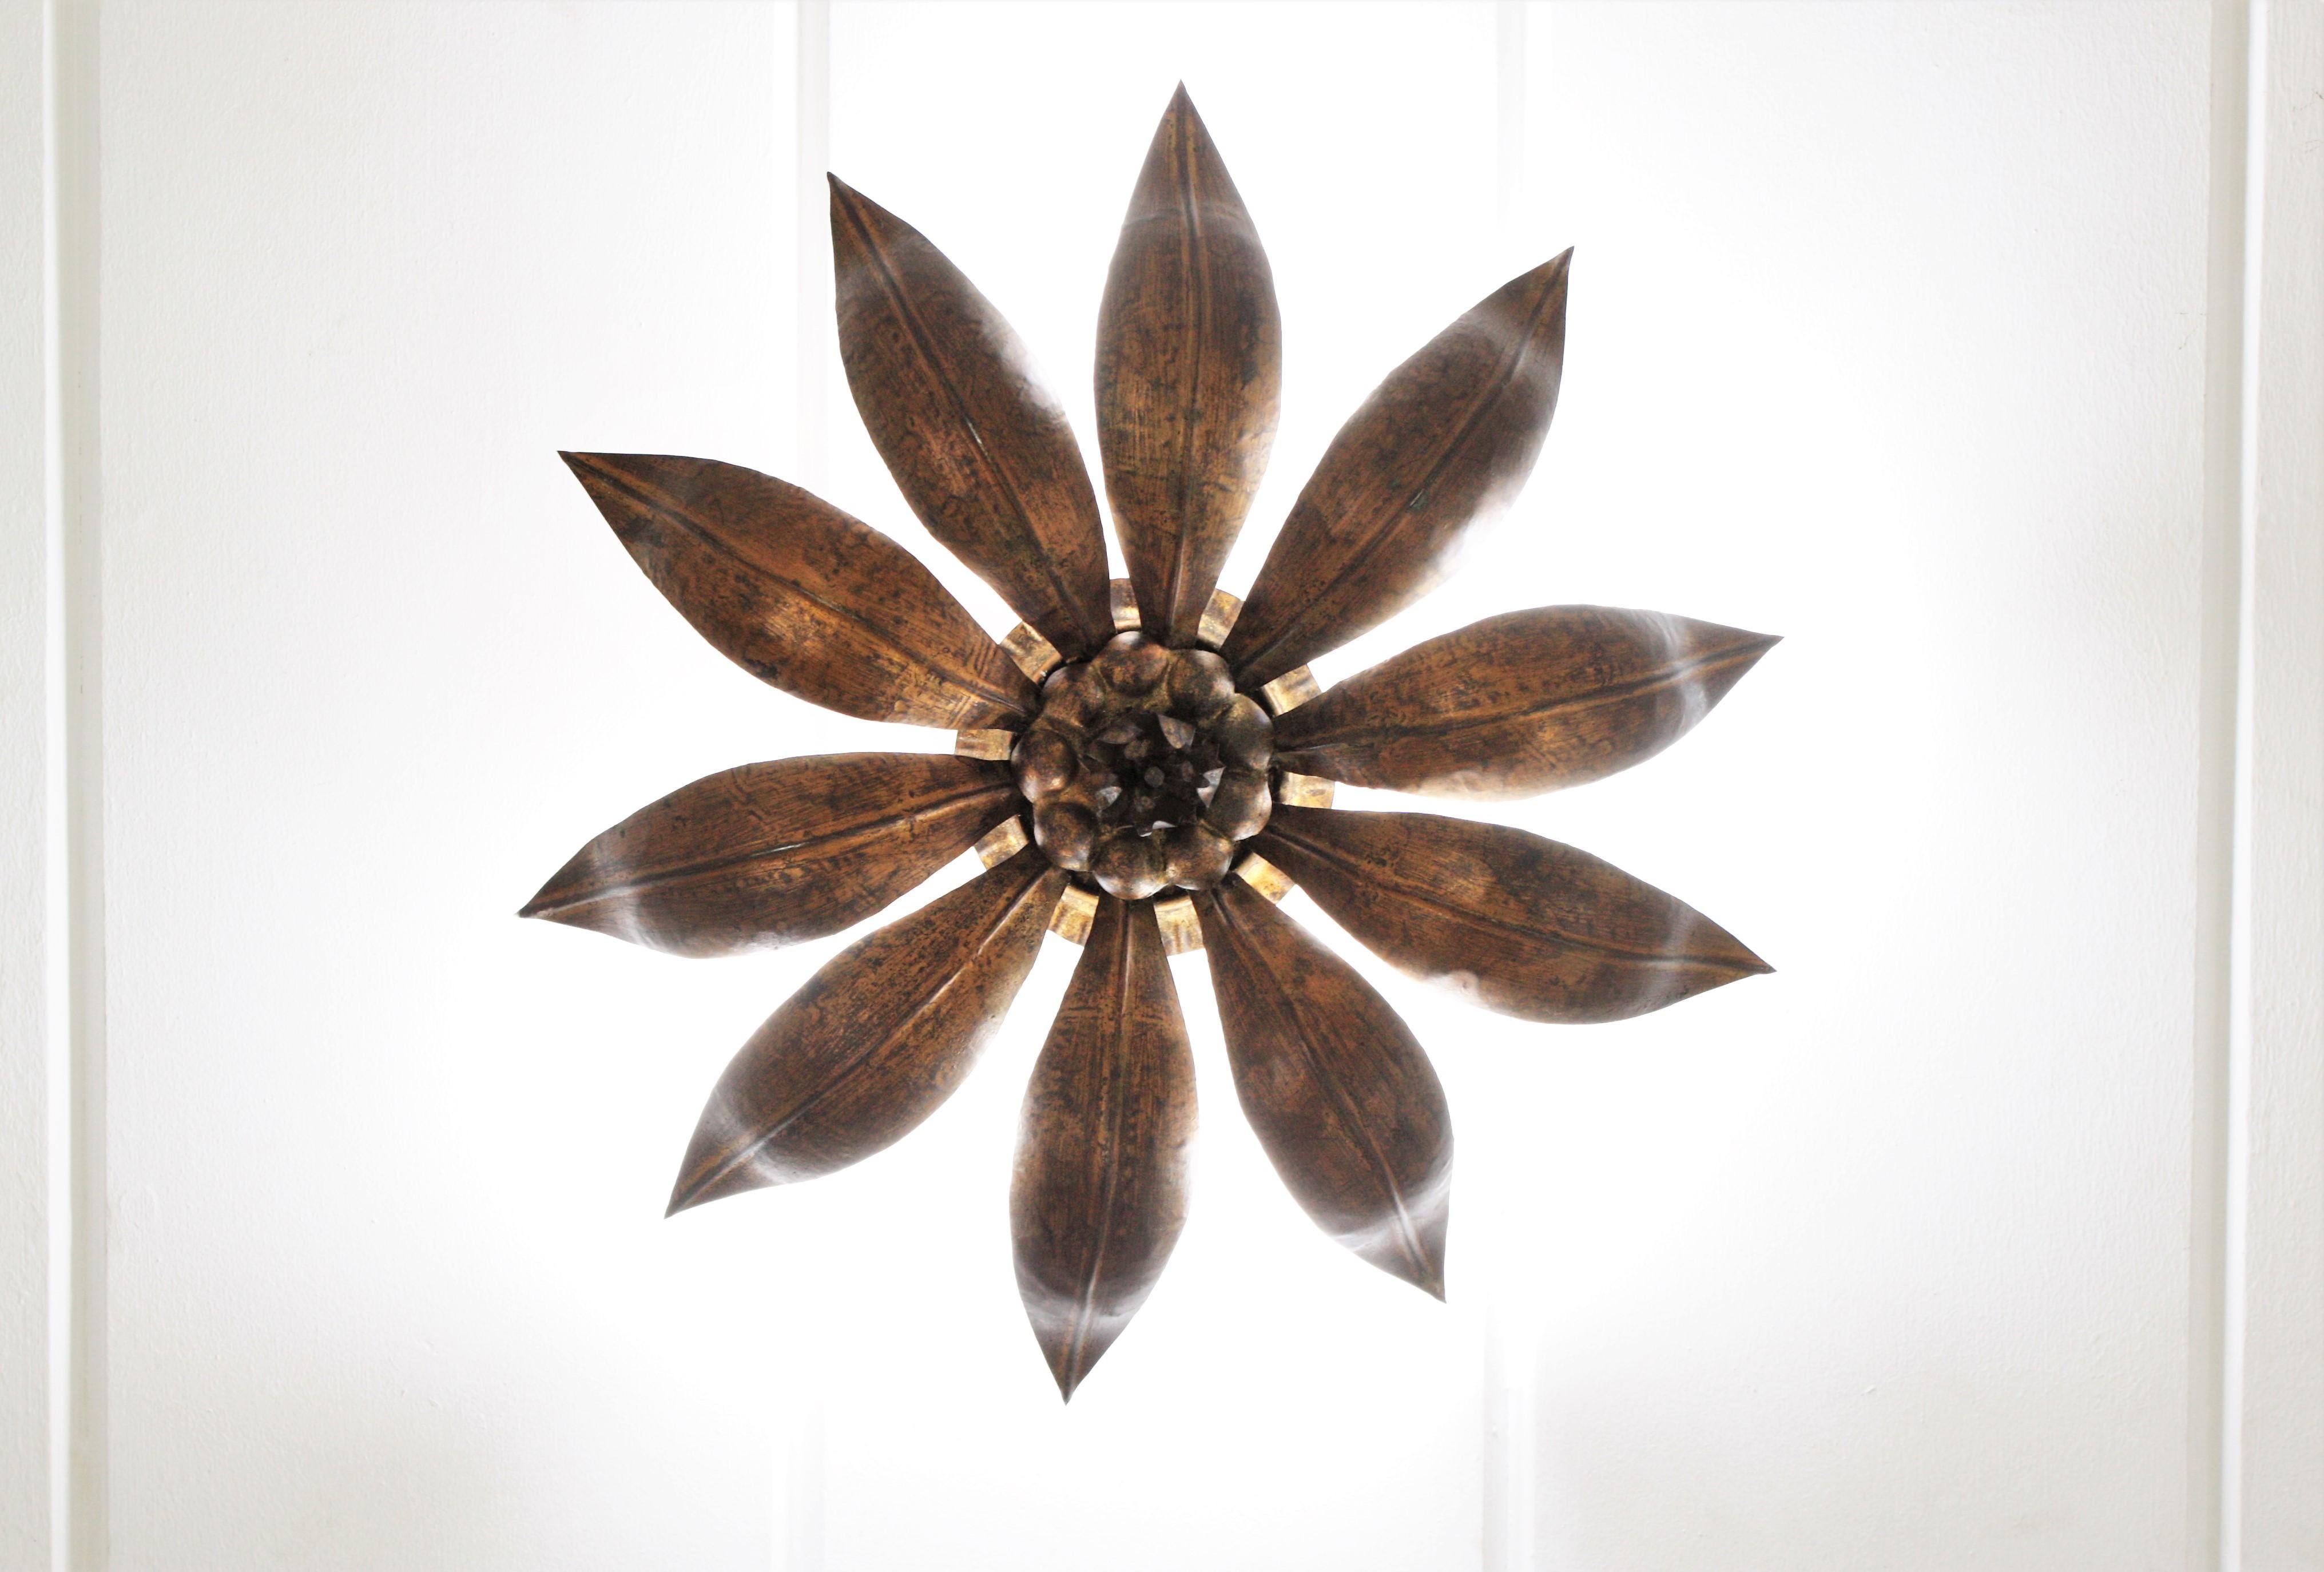 French Sunburst Flower Ceiling Light Fixture in Bronze Gilt Iron, 1940s For Sale 4